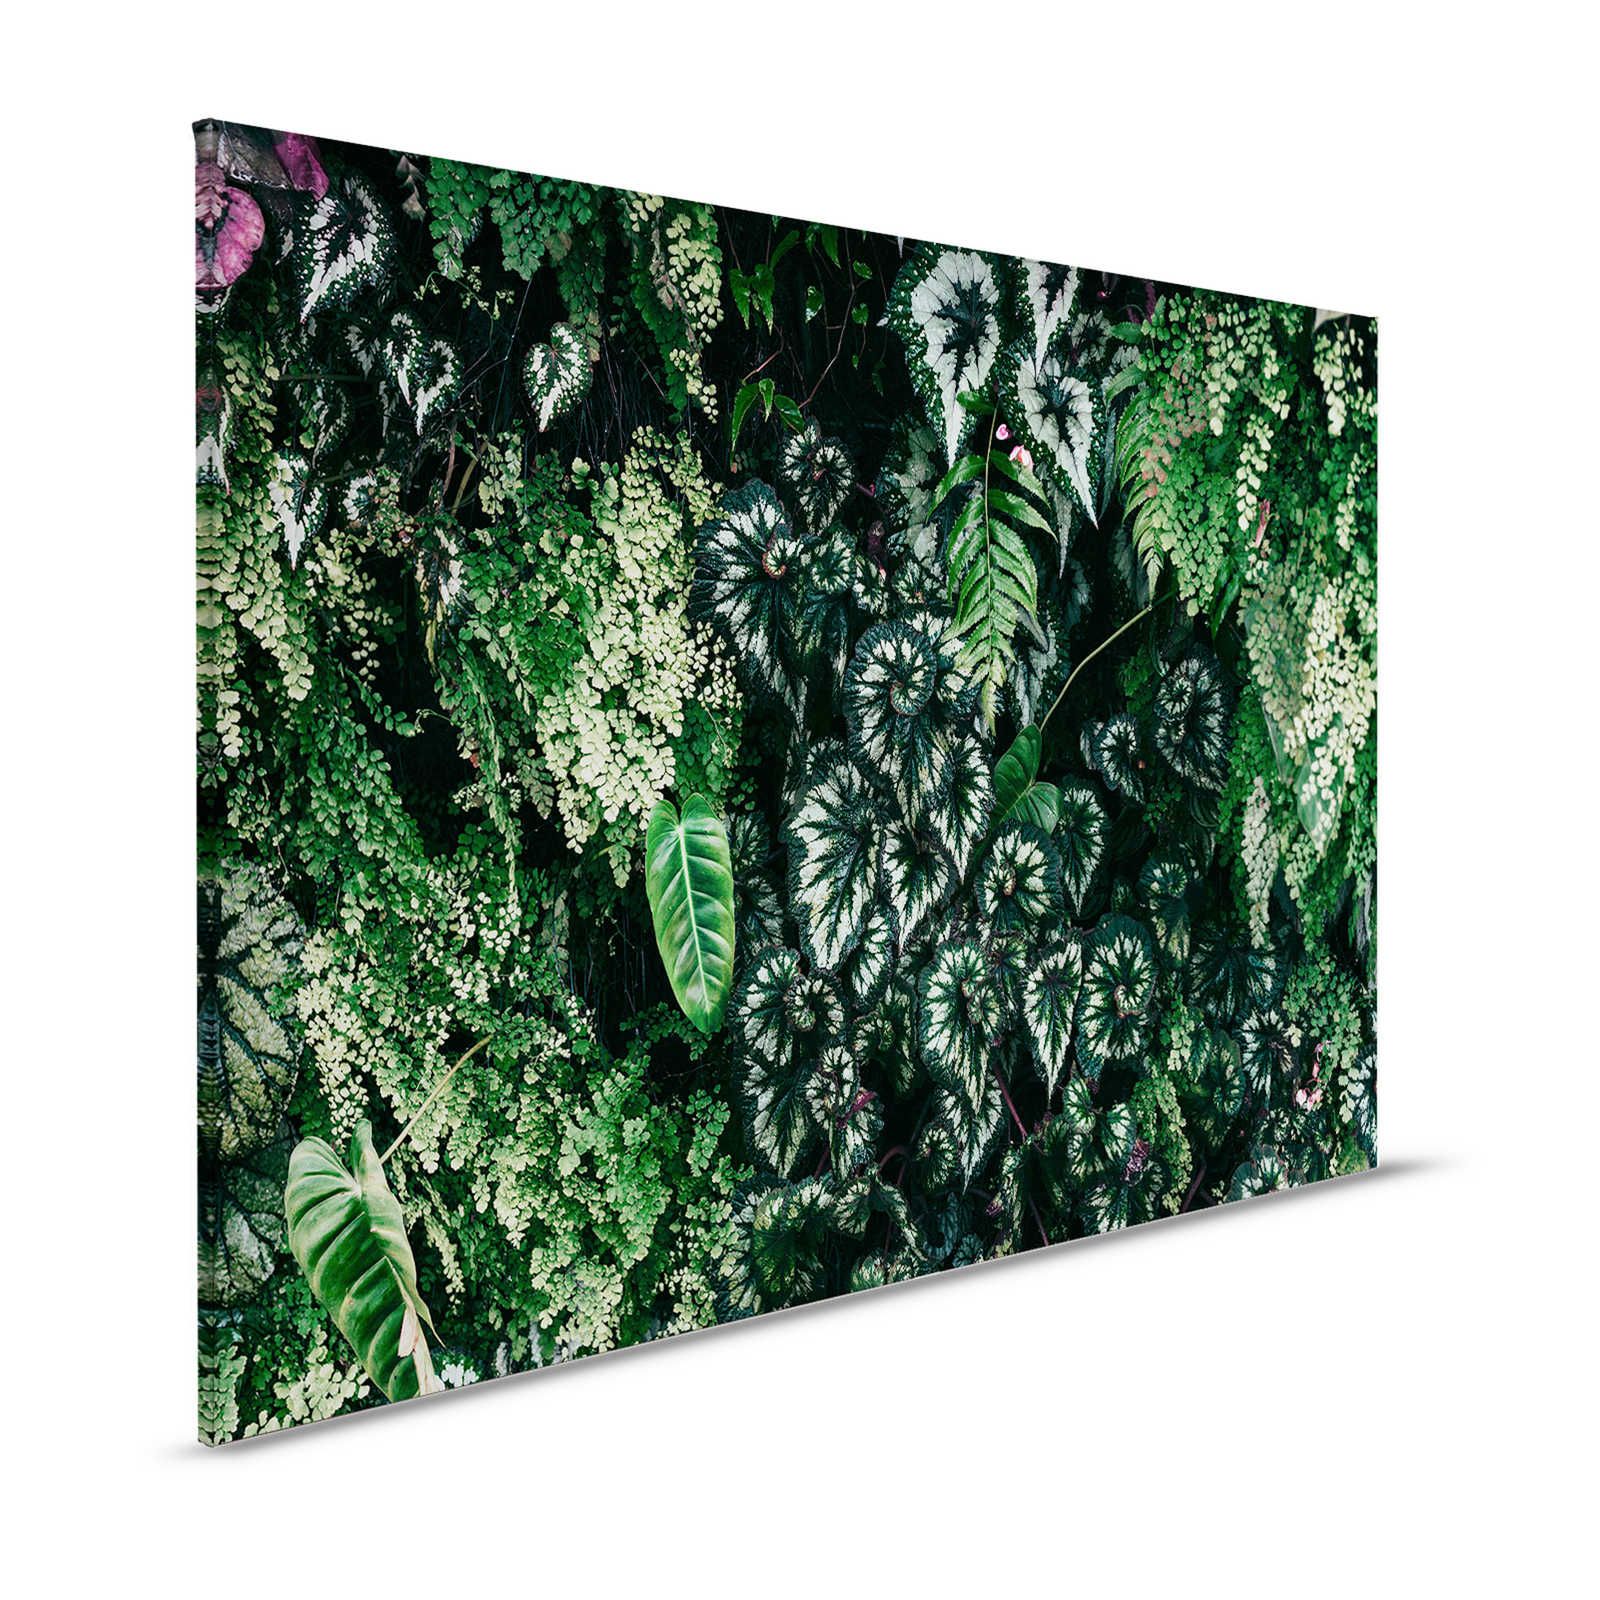 Deep Green 2 - Tableau toile Fourrés de feuilles, fougères & plantes suspendues - 1,20 m x 0,80 m
